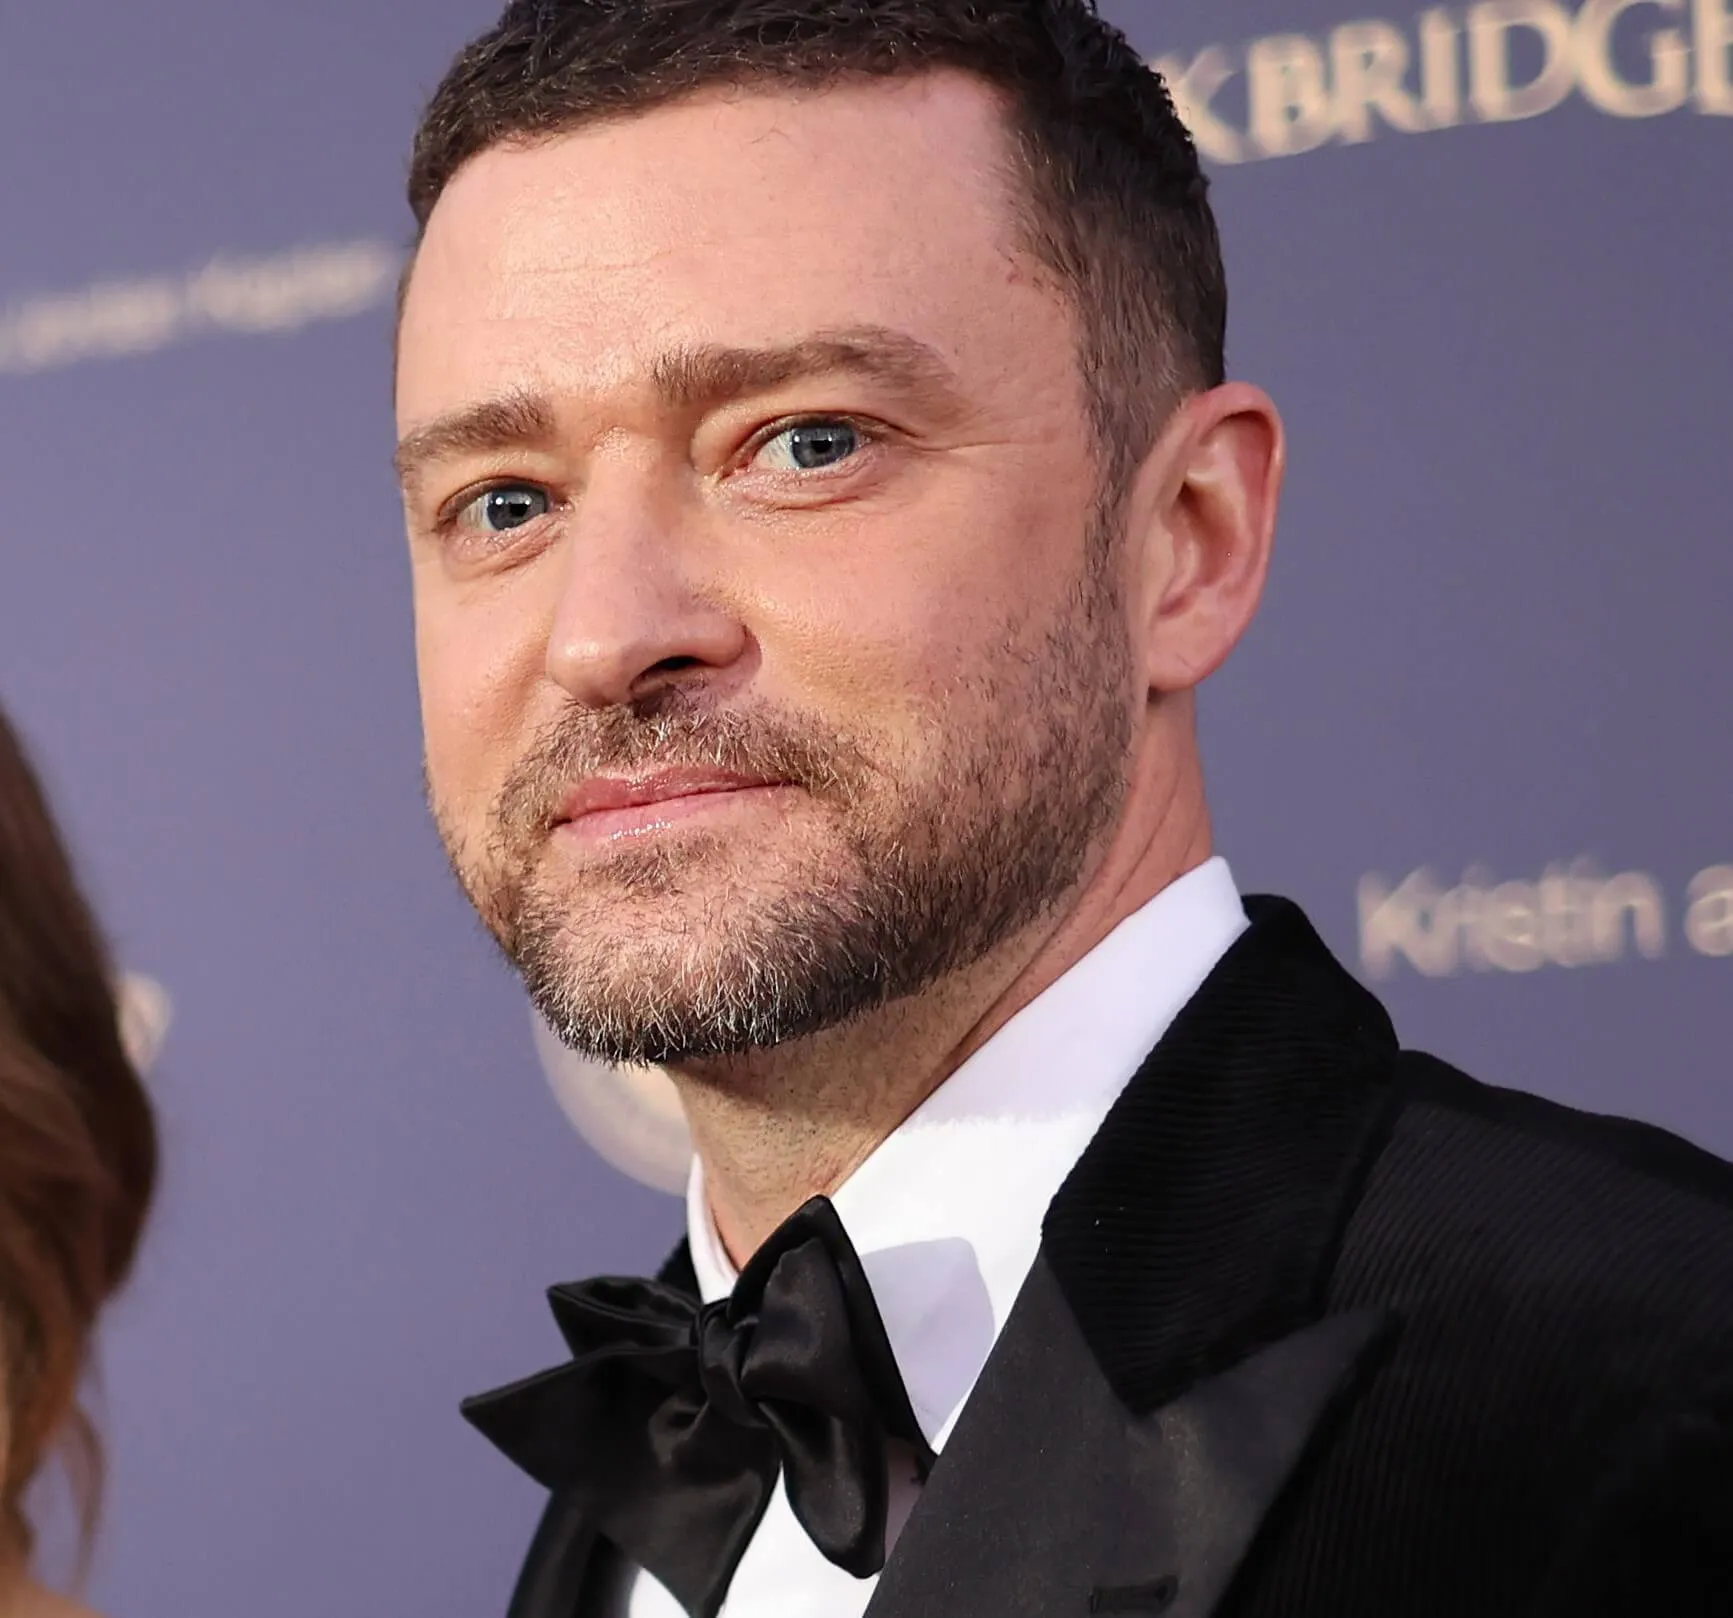 "SexyBack" singer Justin Timberlake wearing a suit